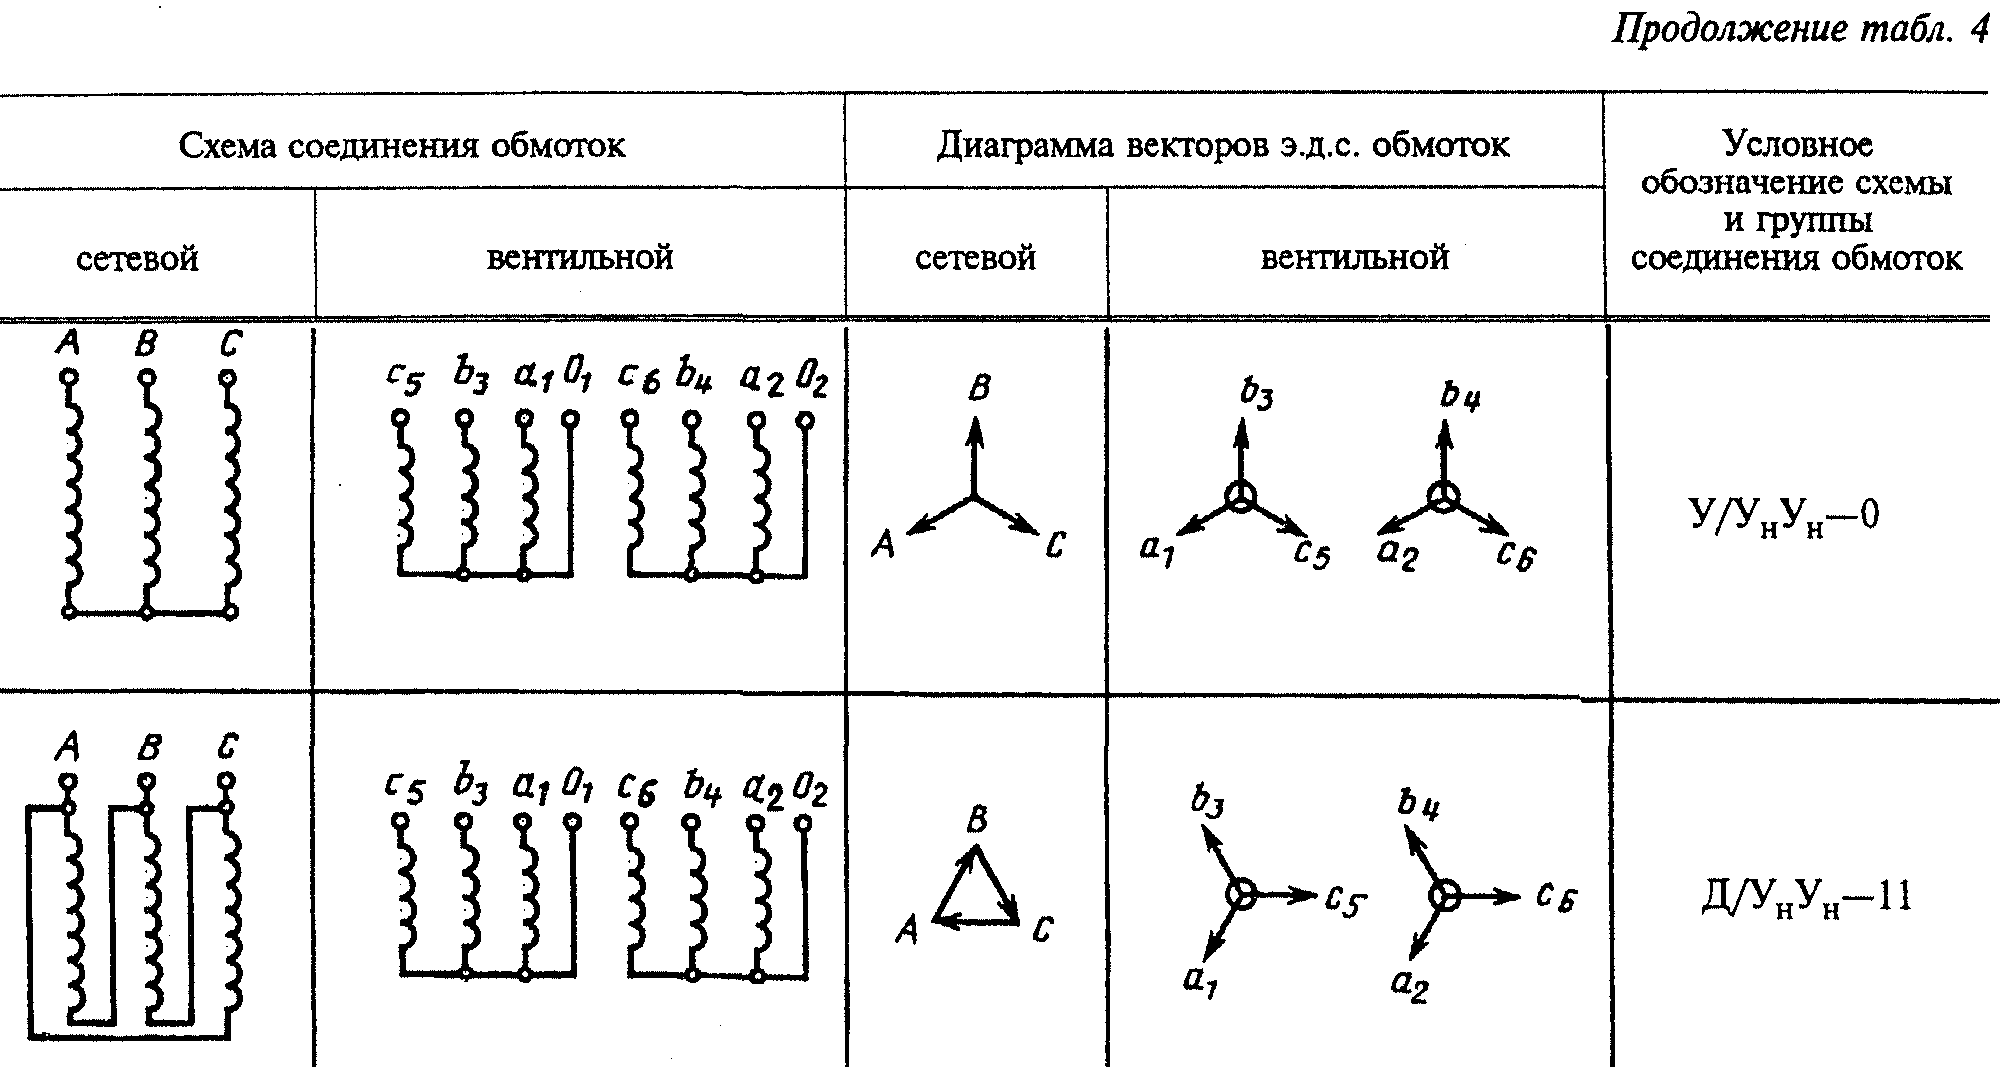 Группа соединений силовых трансформаторов. Схема соединения обмоток трансформатора 1/1-0. 1/1-0 Группа соединения. Обозначения схемы соединения обмоток. Схема соединения обмоток трансформатора у/Zн-11.